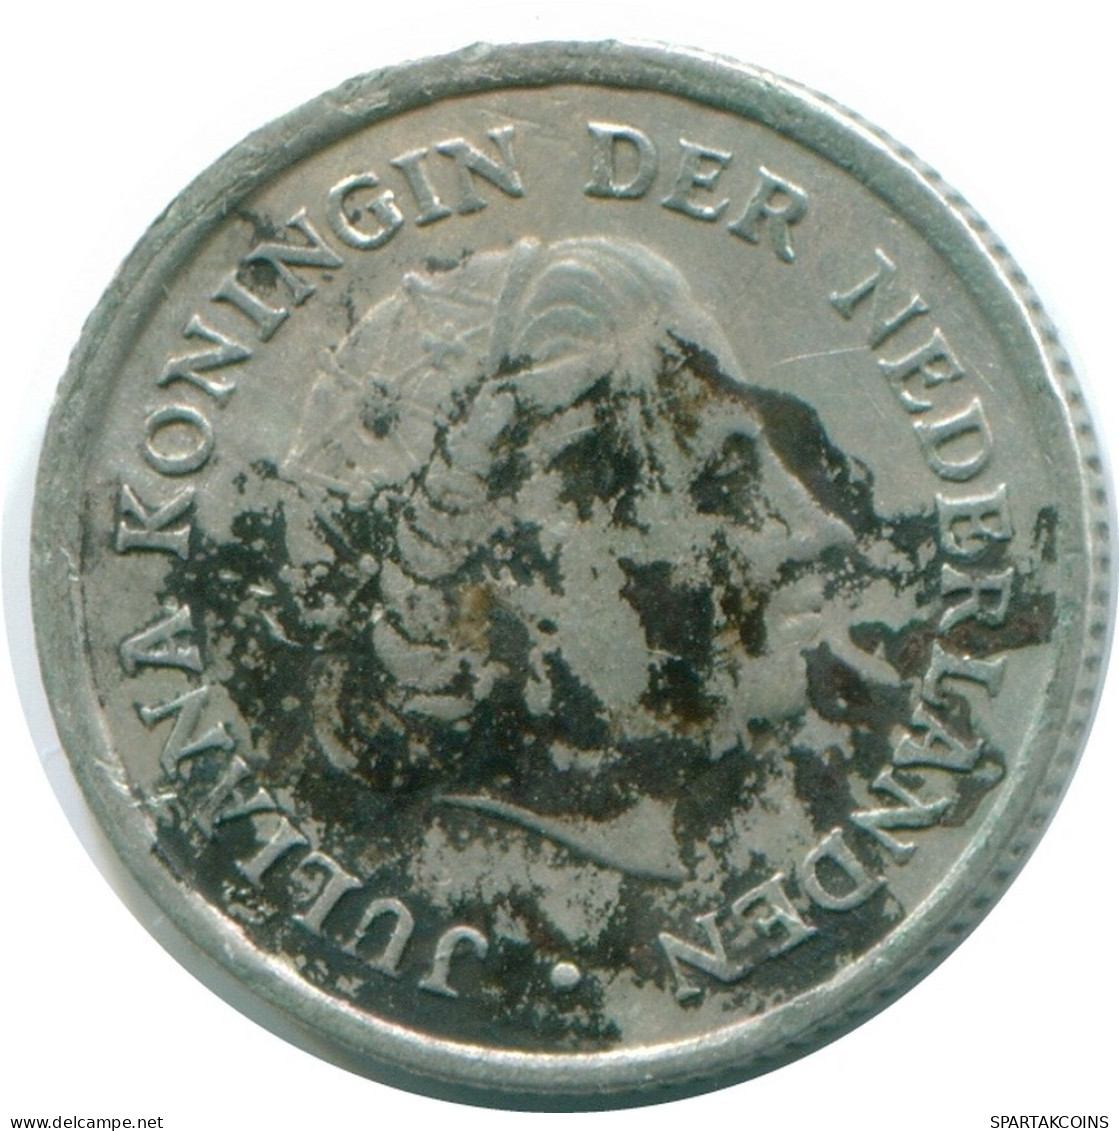 1/10 GULDEN 1970 NIEDERLÄNDISCHE ANTILLEN SILBER Koloniale Münze #NL13040.3.D.A - Niederländische Antillen